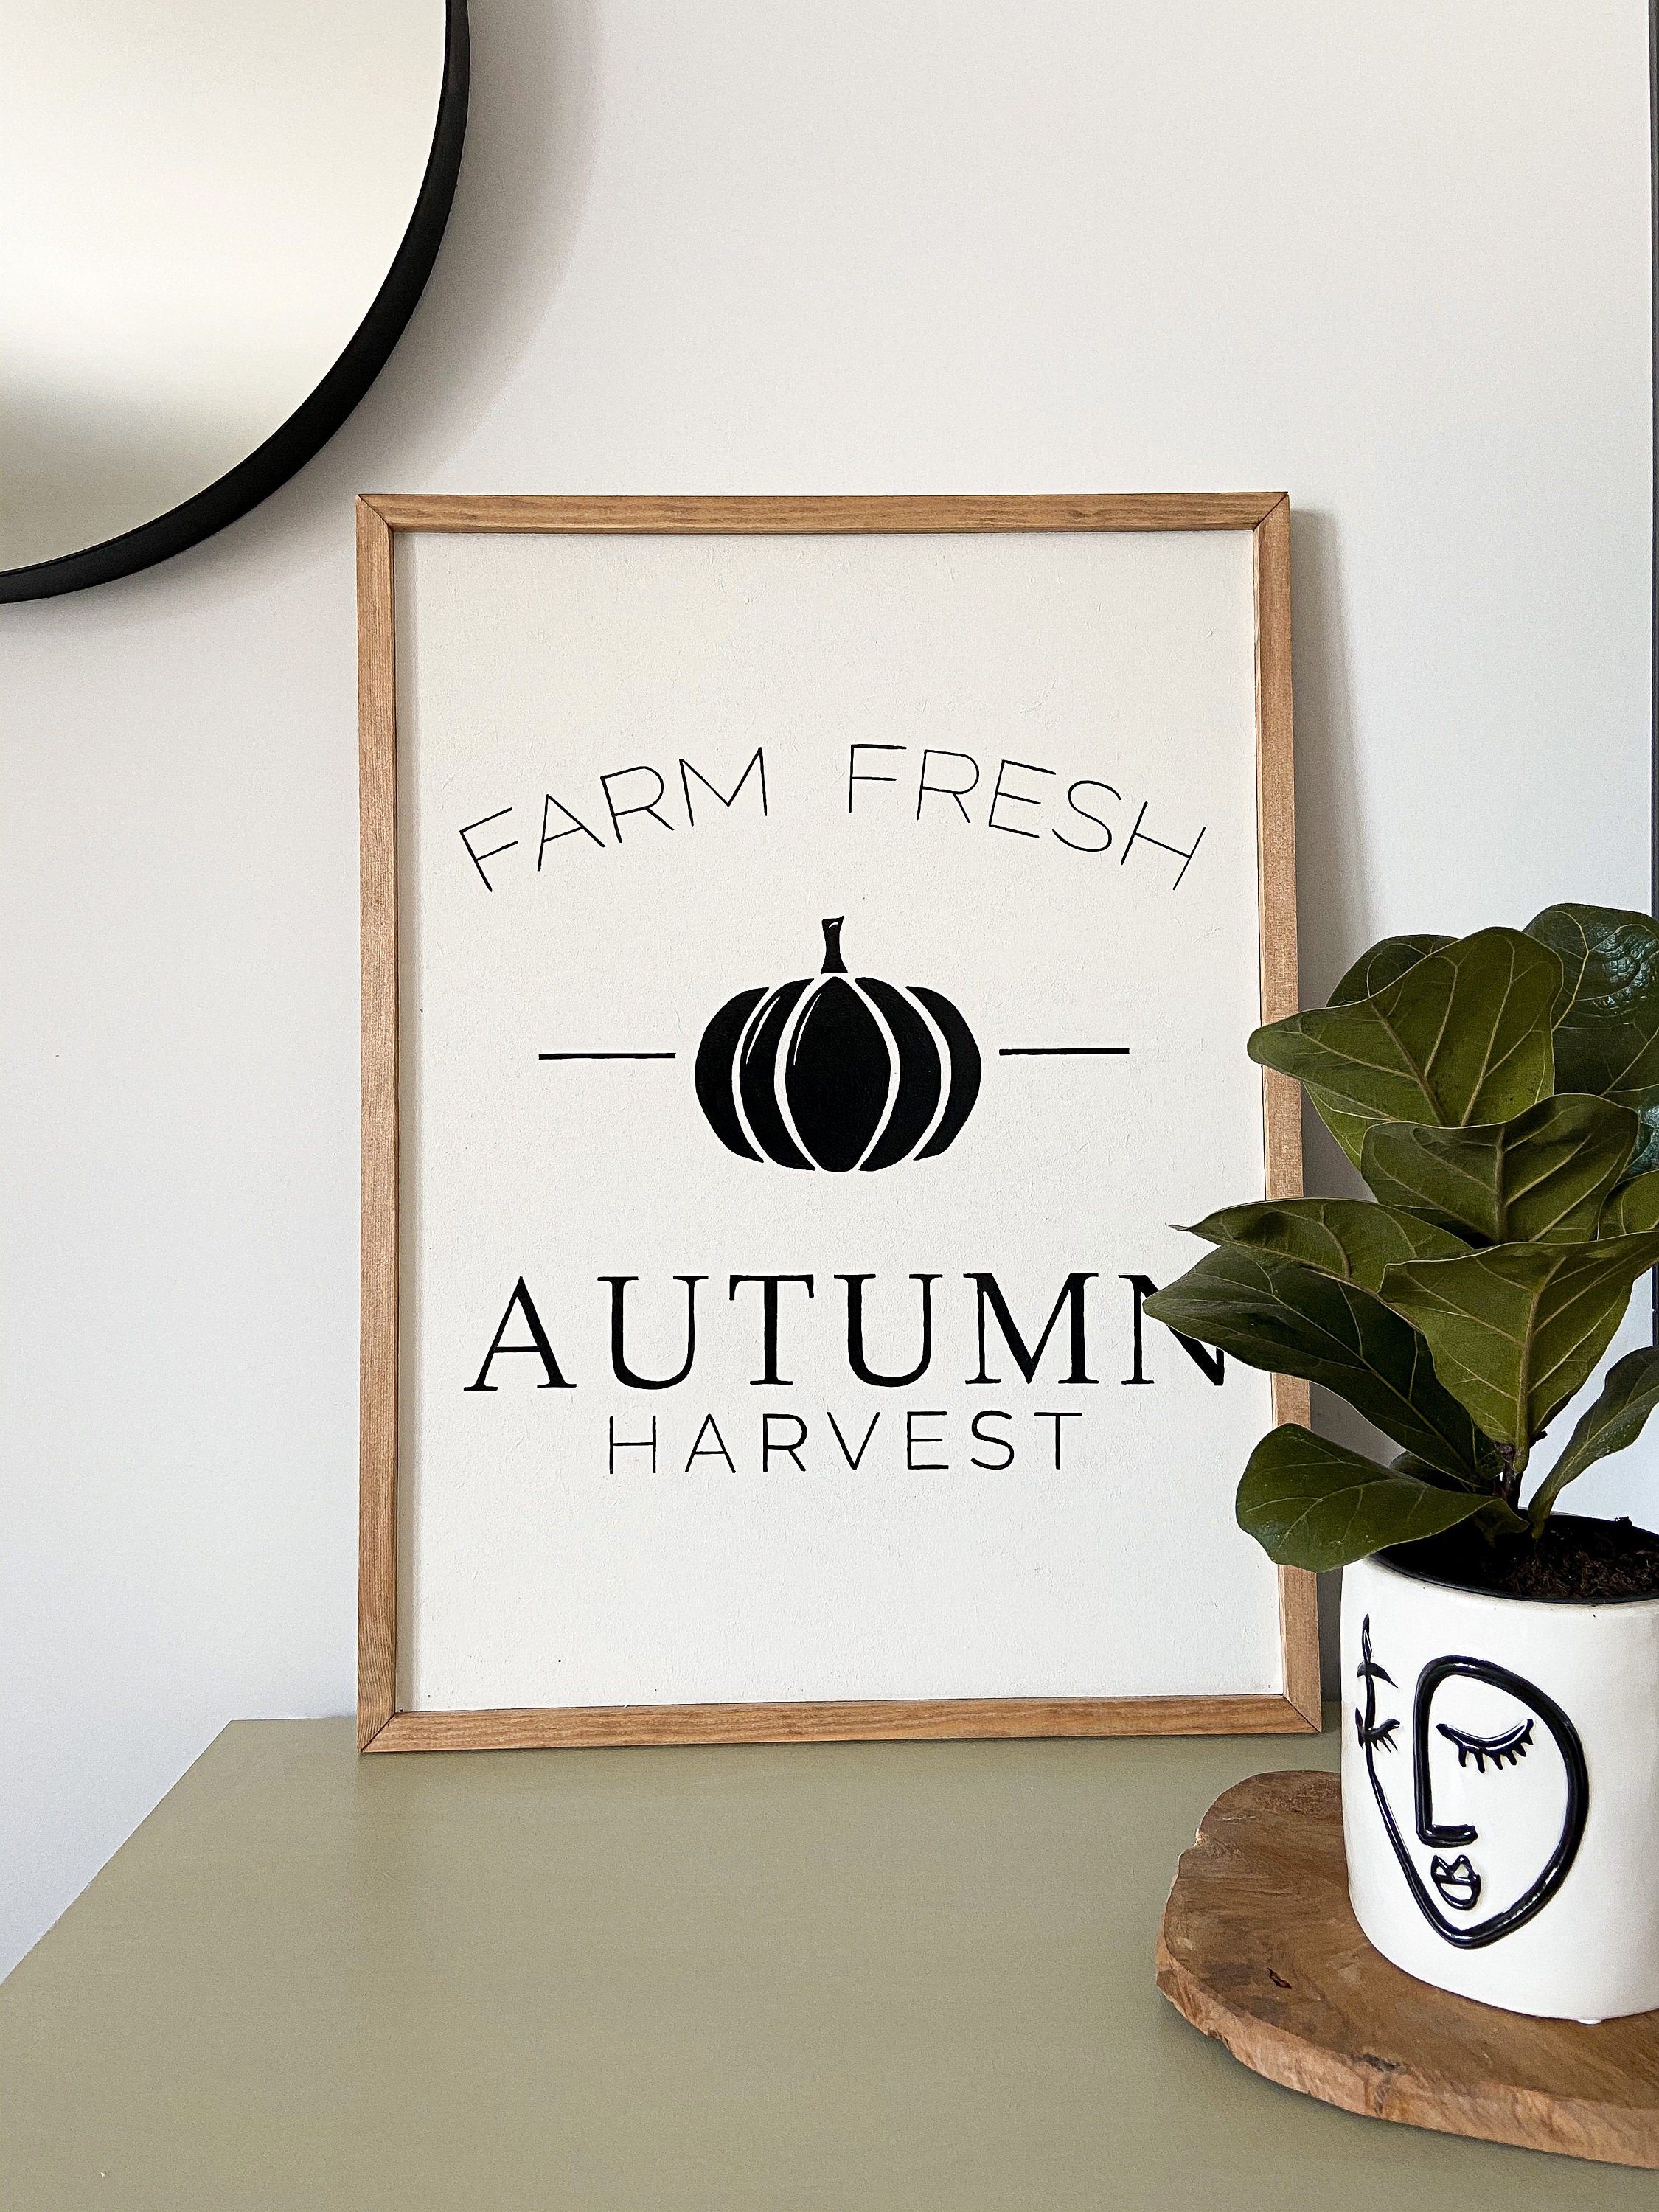 Cadre en Bois Peint Farm Fresh - Autumn Harvest Noir et Blanc Enseigne Décoration Automne Style Farm